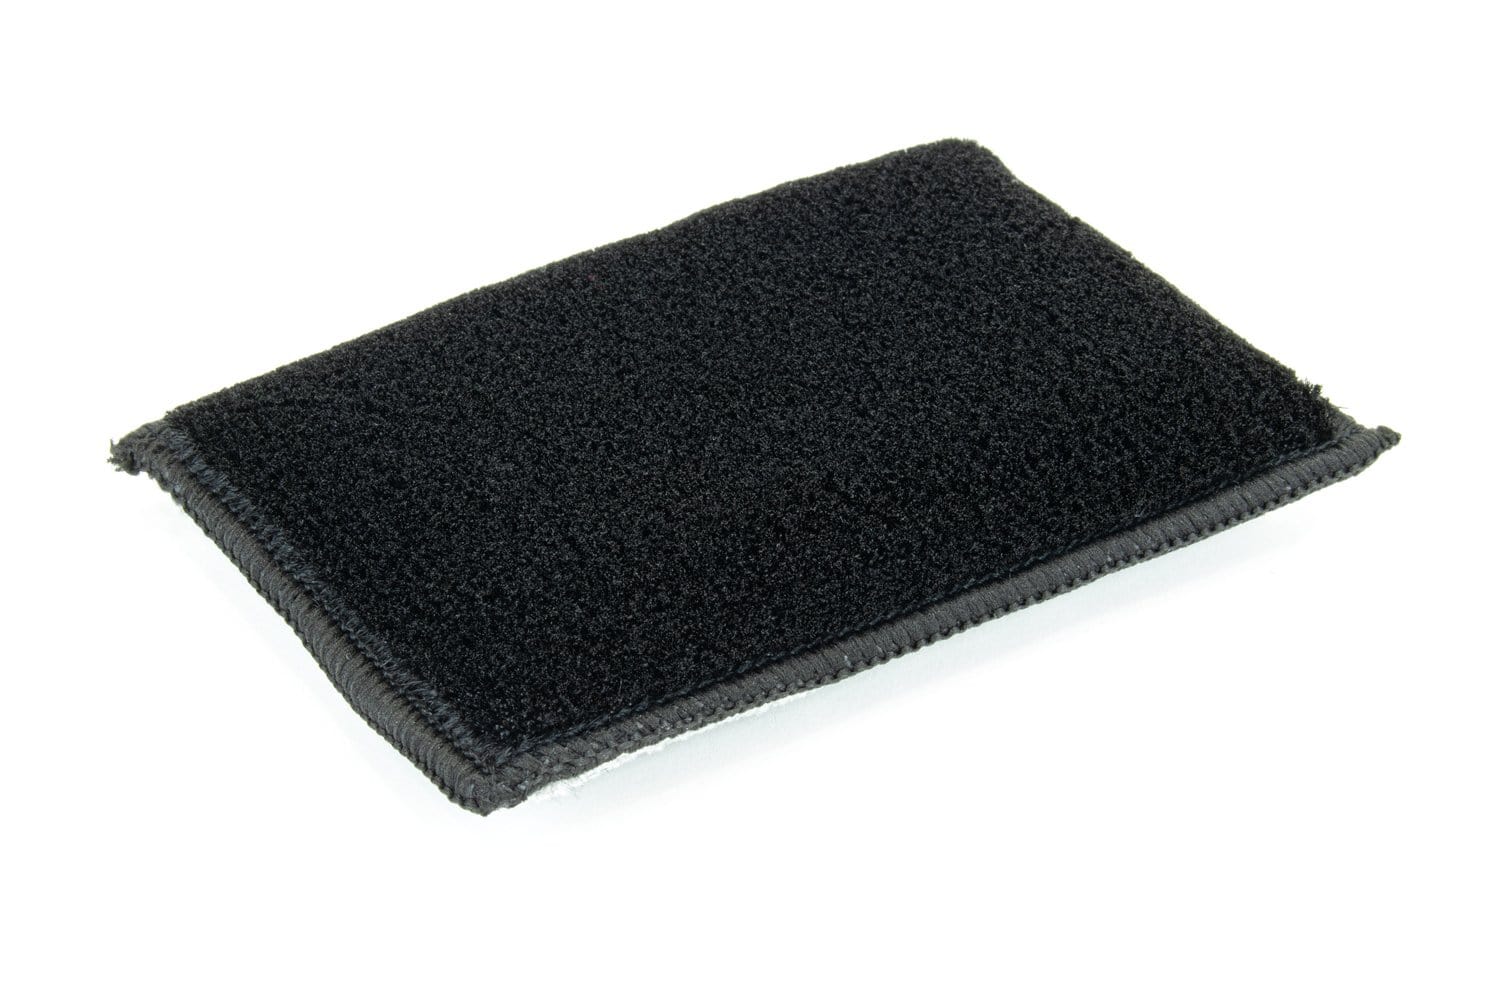 Leather & Vinyl Interior Scrubbing Brush Sponges - 3 Pack — Autofiber